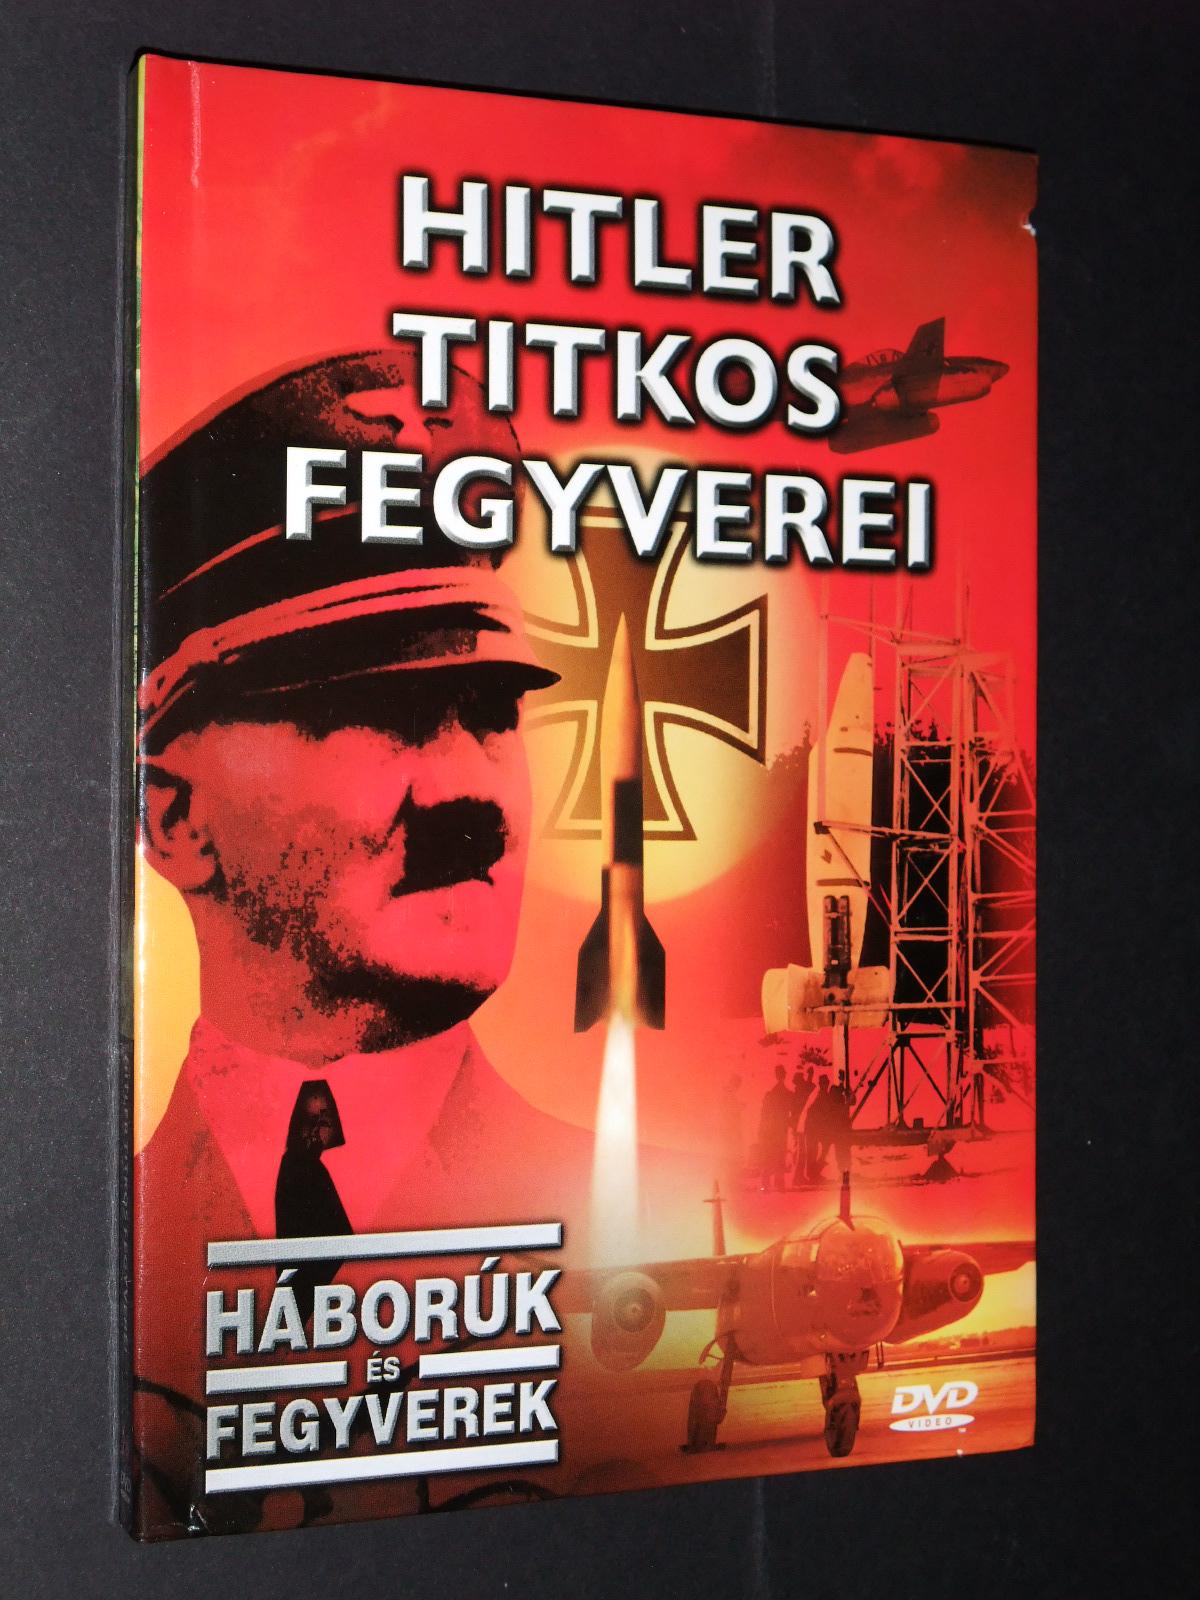 Hitler titkos fegyverei DVD és könyv

350.-